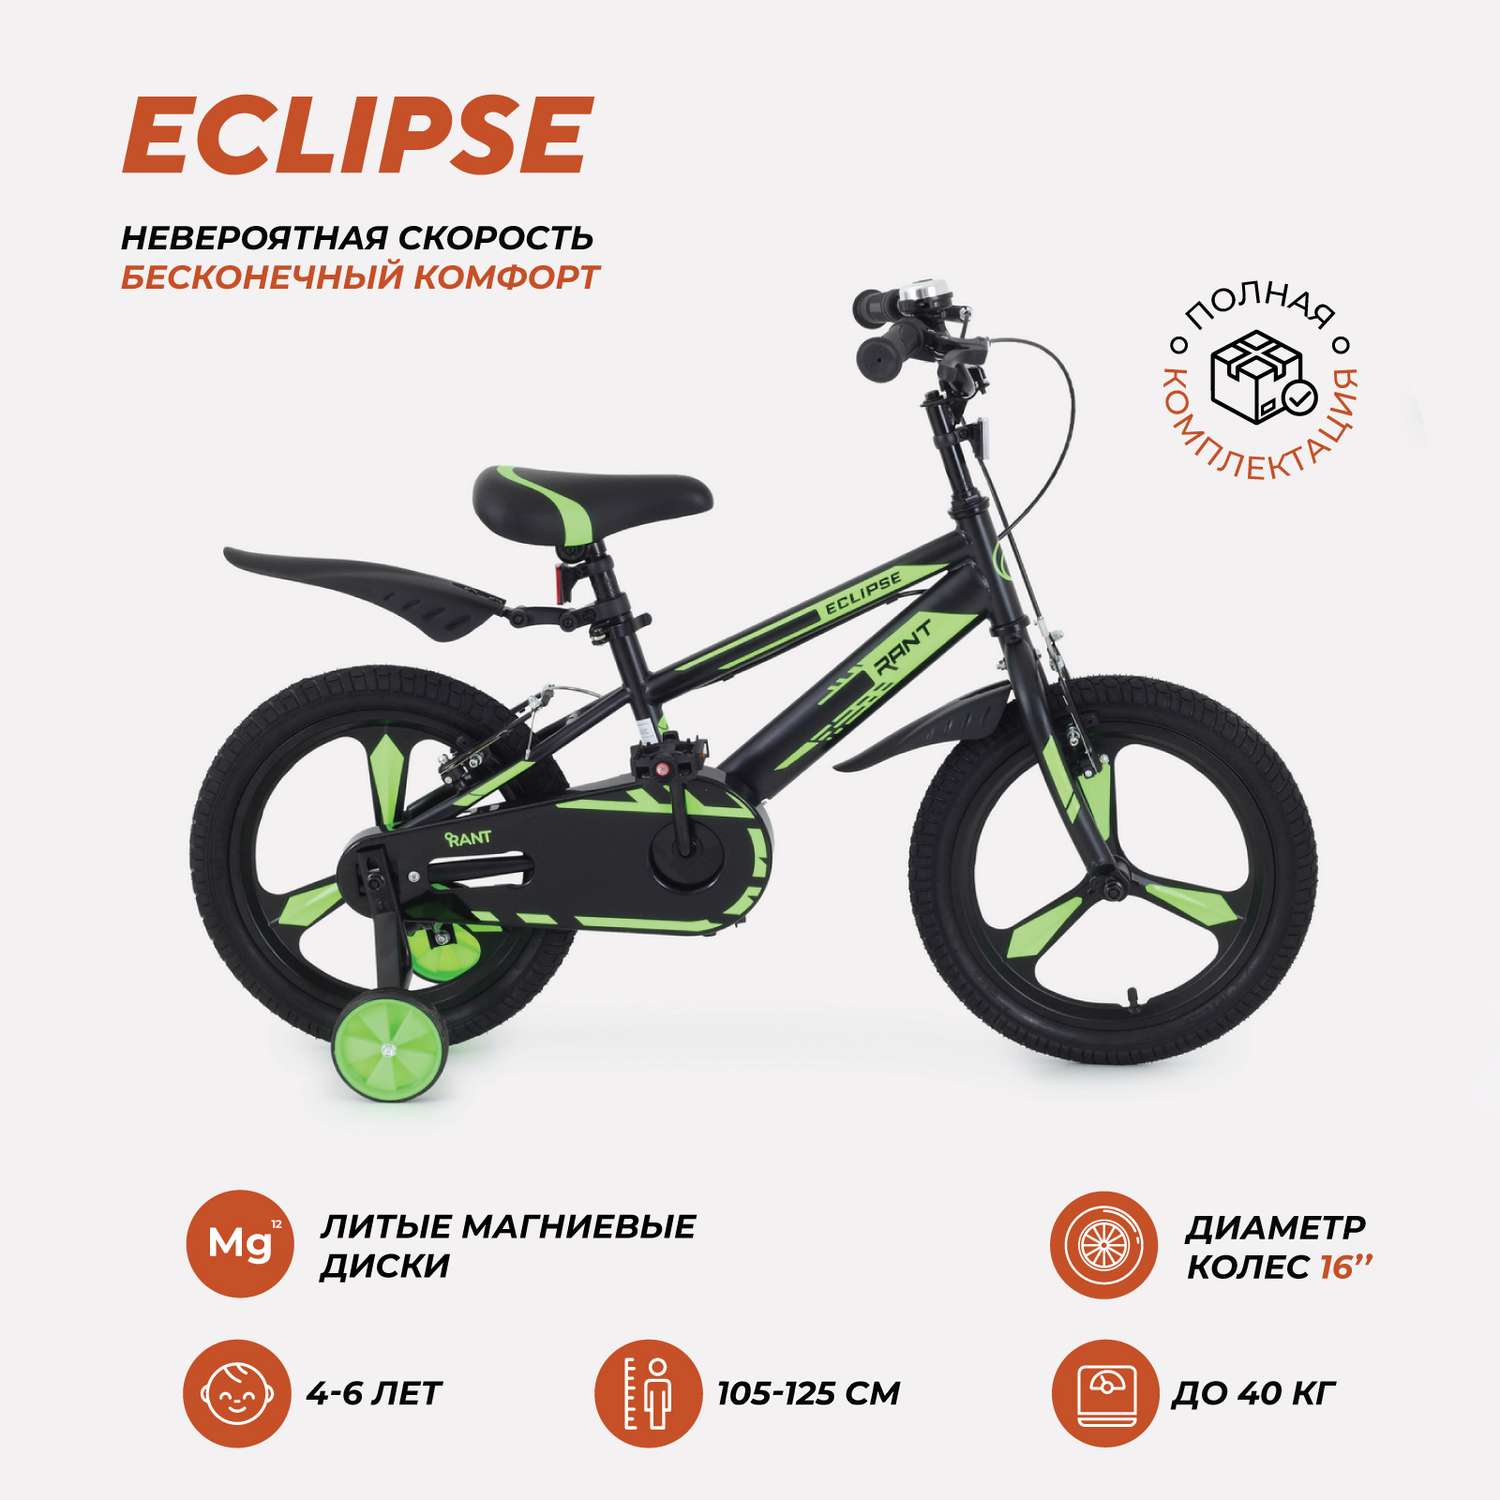 Велосипед 2-х колесный детский Rant Eclipse черно-зеленый 16 - фото 1